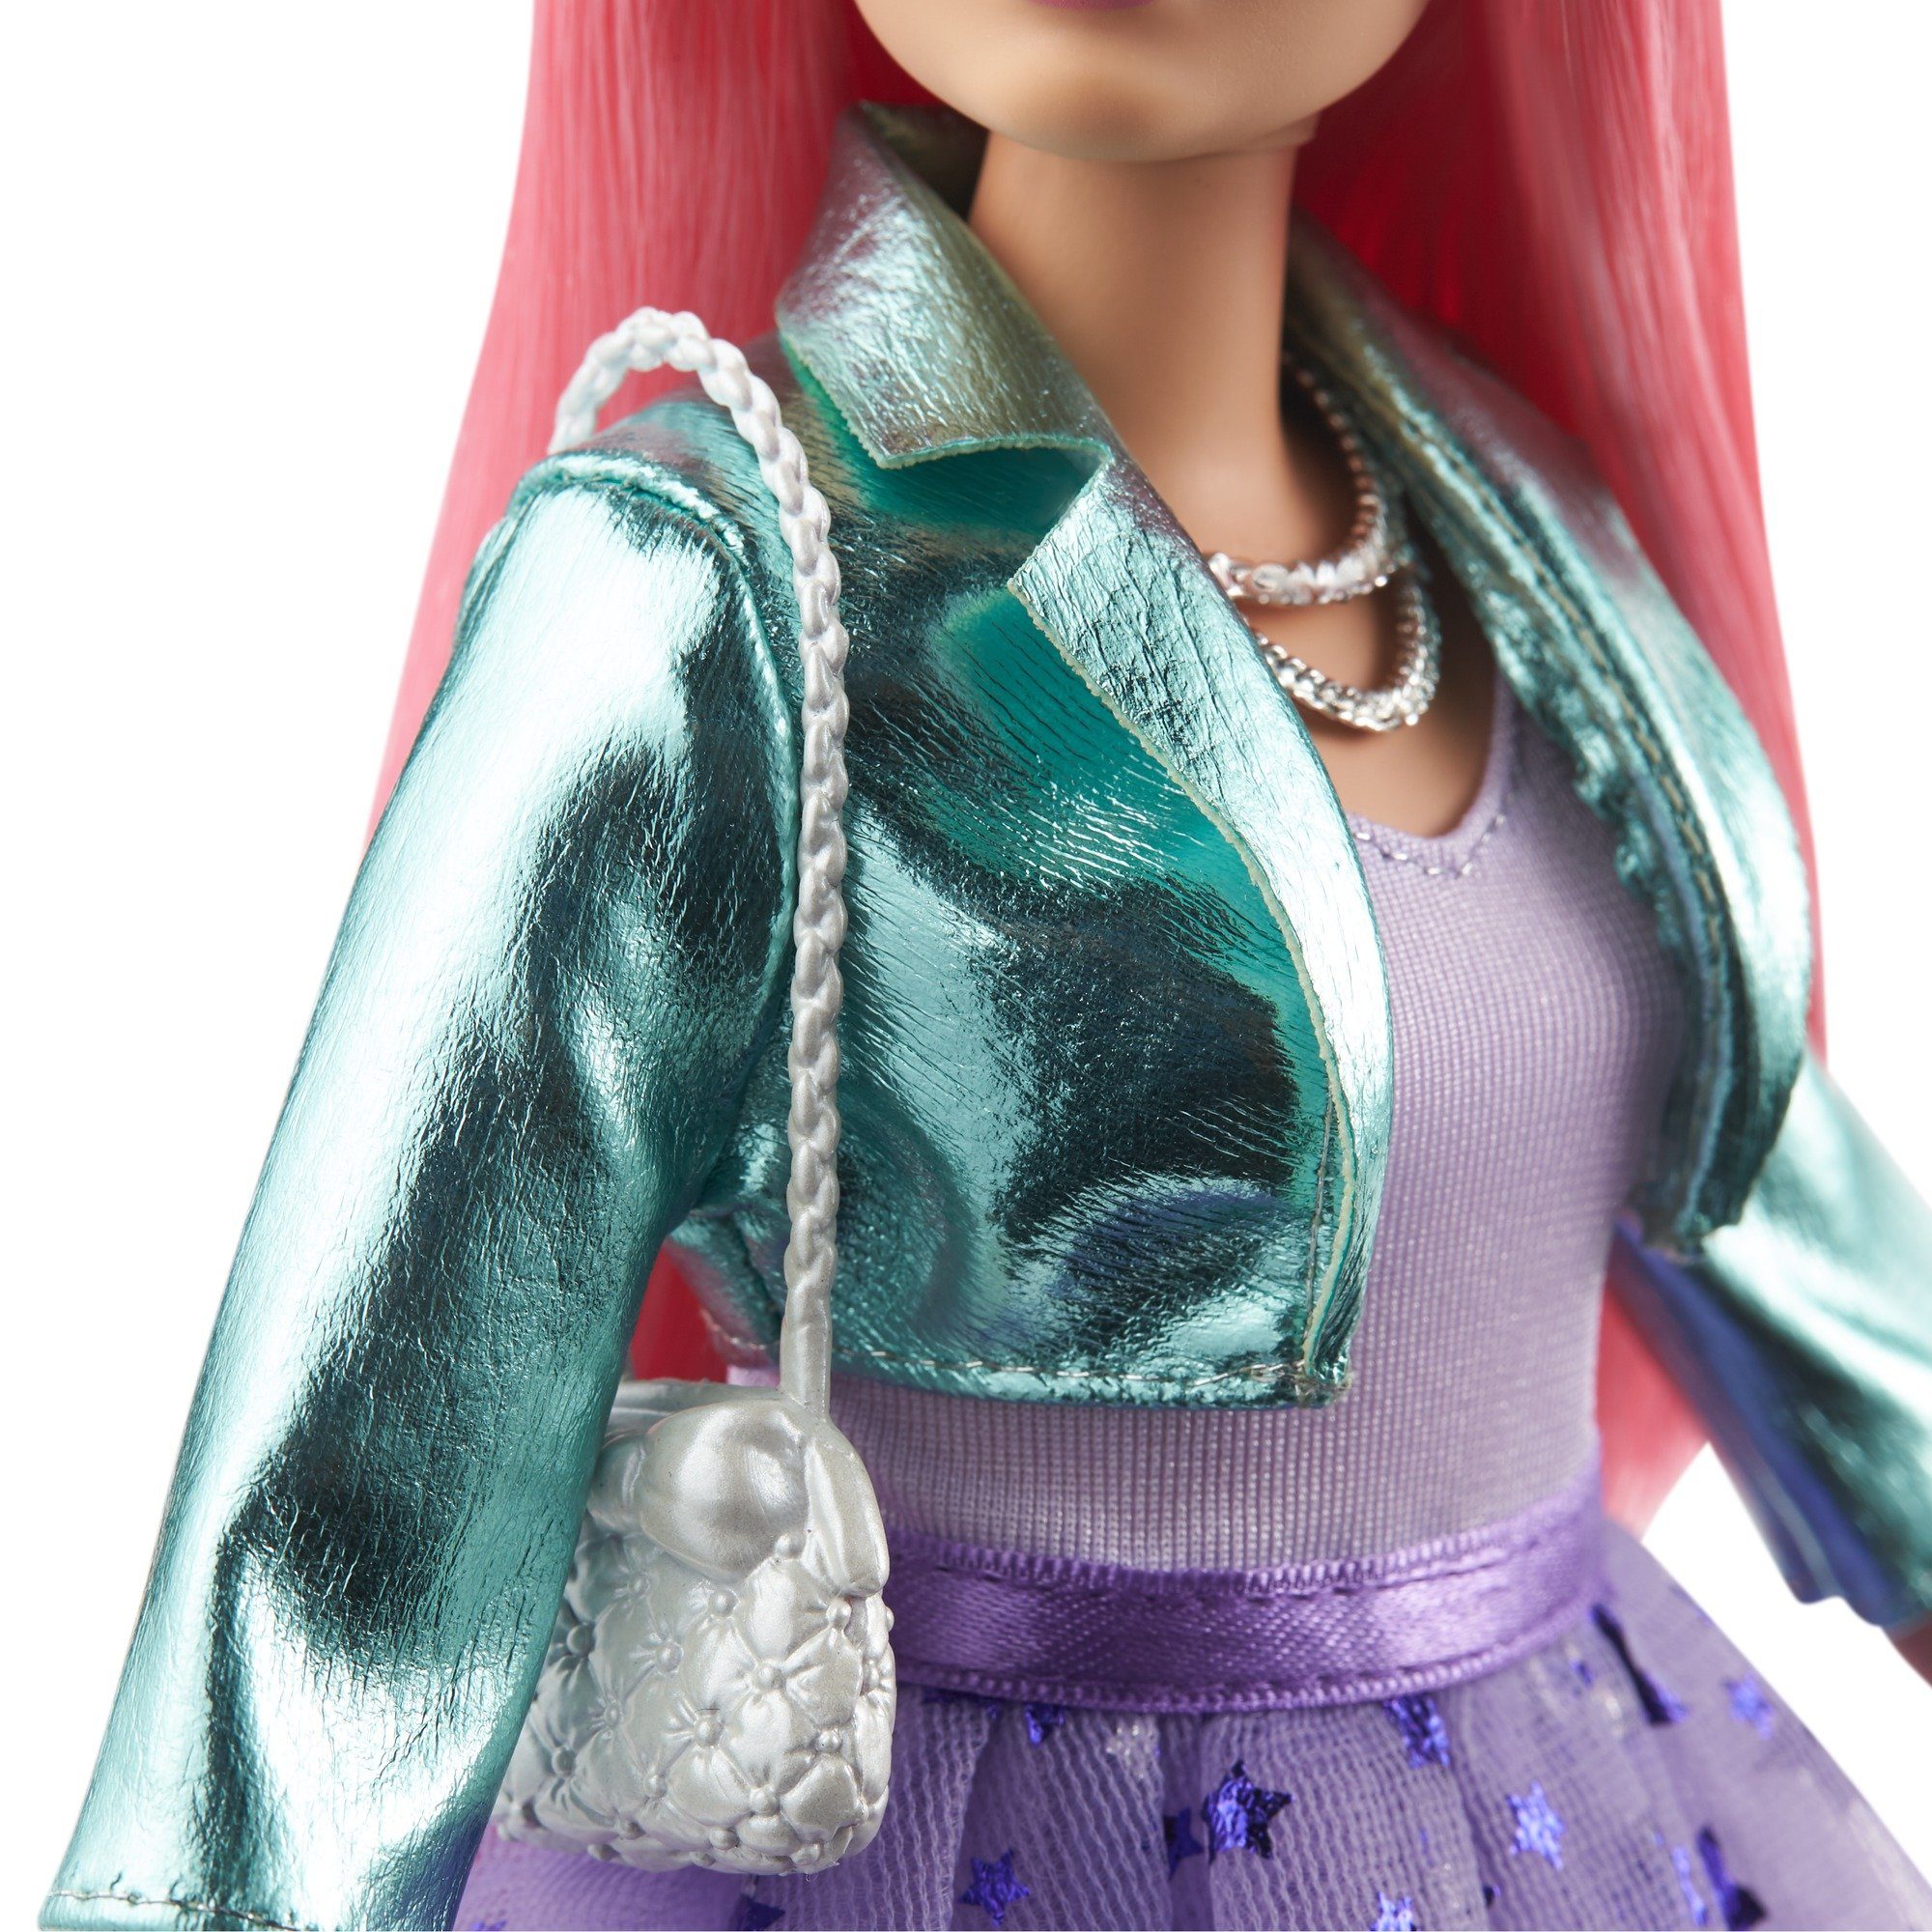 Barbie Anziehpuppe mit Puppe Abenteuer GML77 Prinzessinnen - Daisy Hündchen